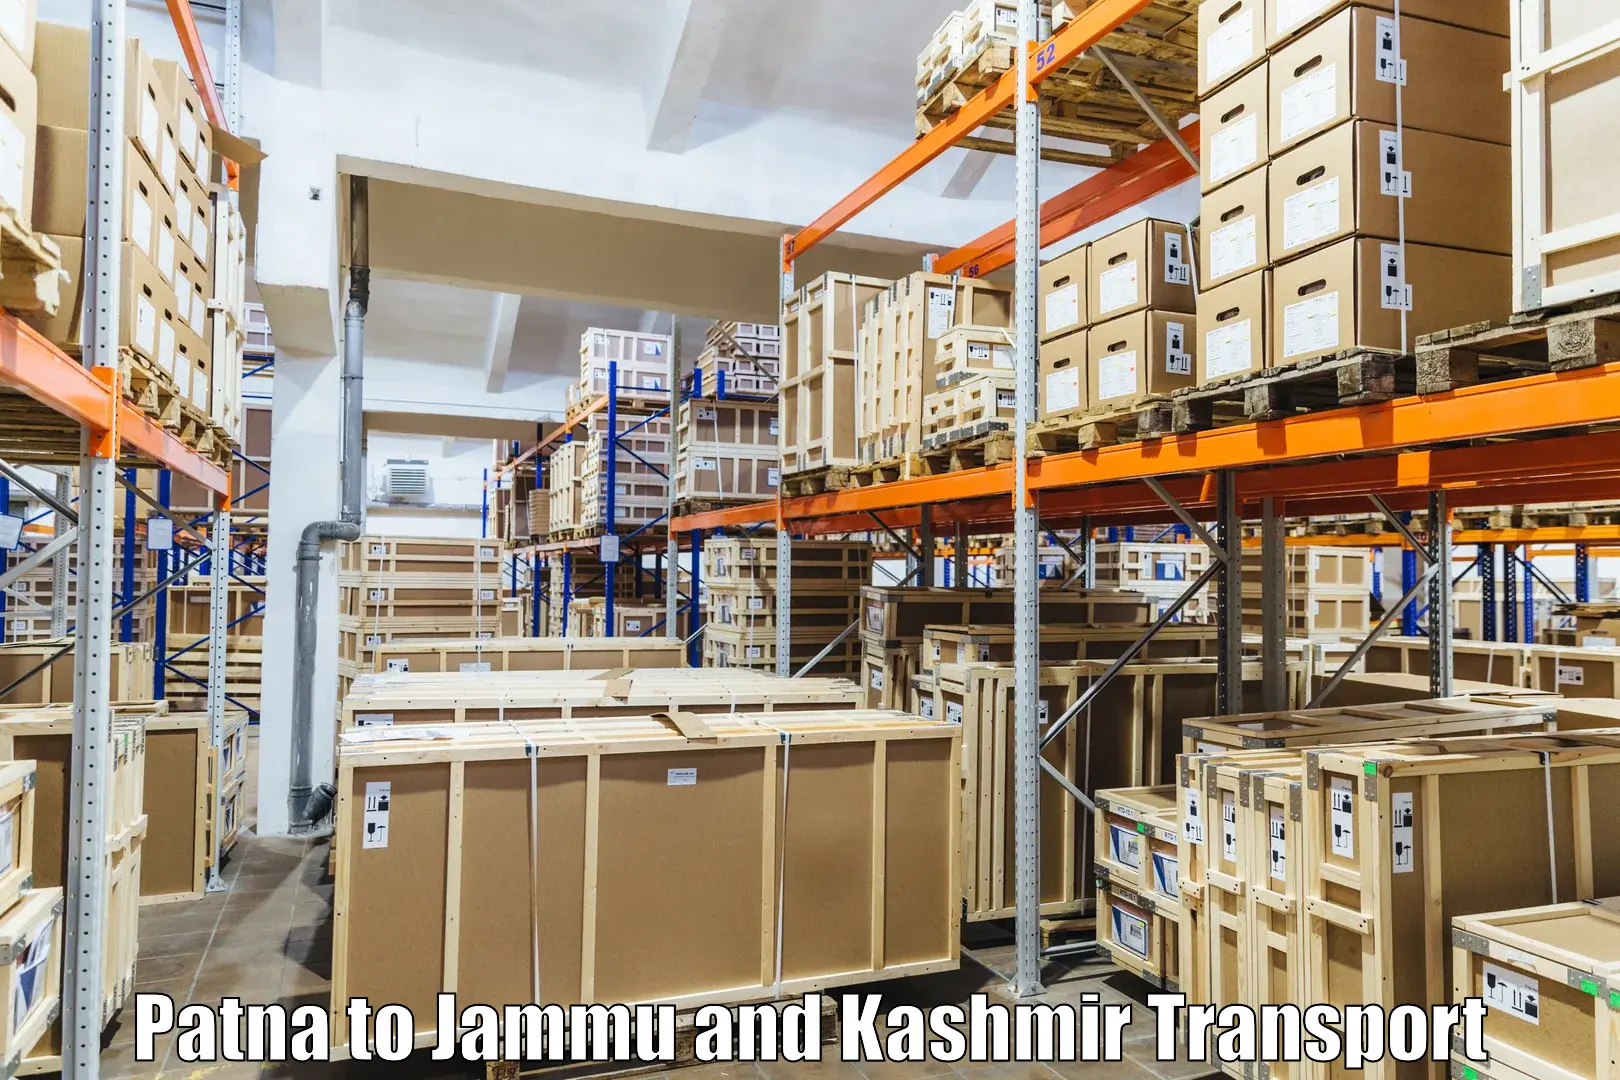 Vehicle transport services Patna to University of Jammu